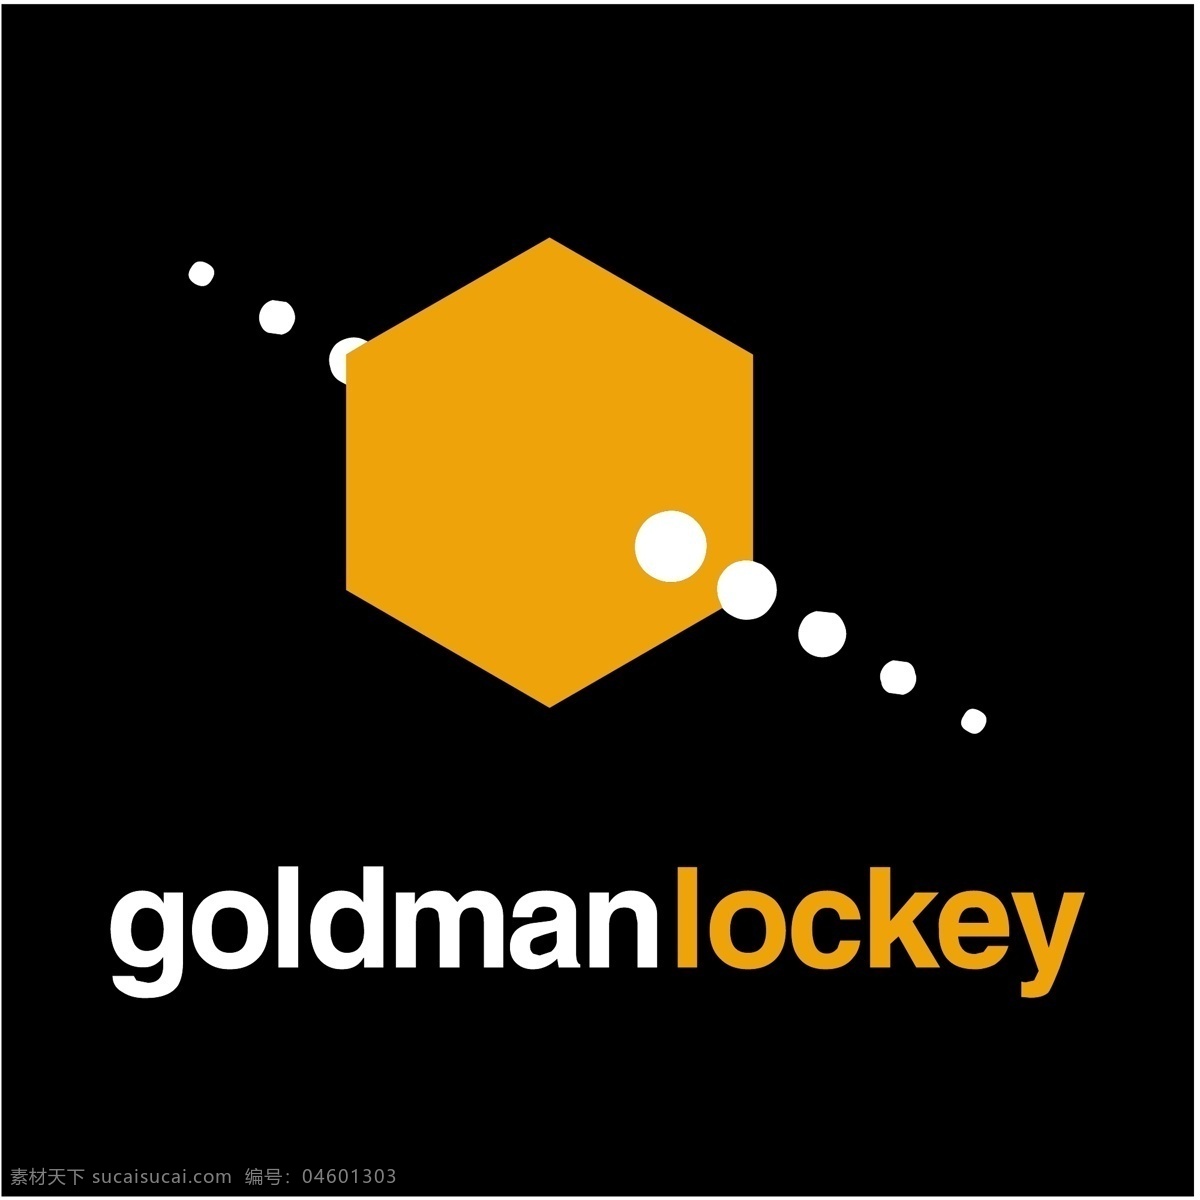 戈德 曼科 戈德曼 自由 螺丝 标志 标识 psd源文件 logo设计